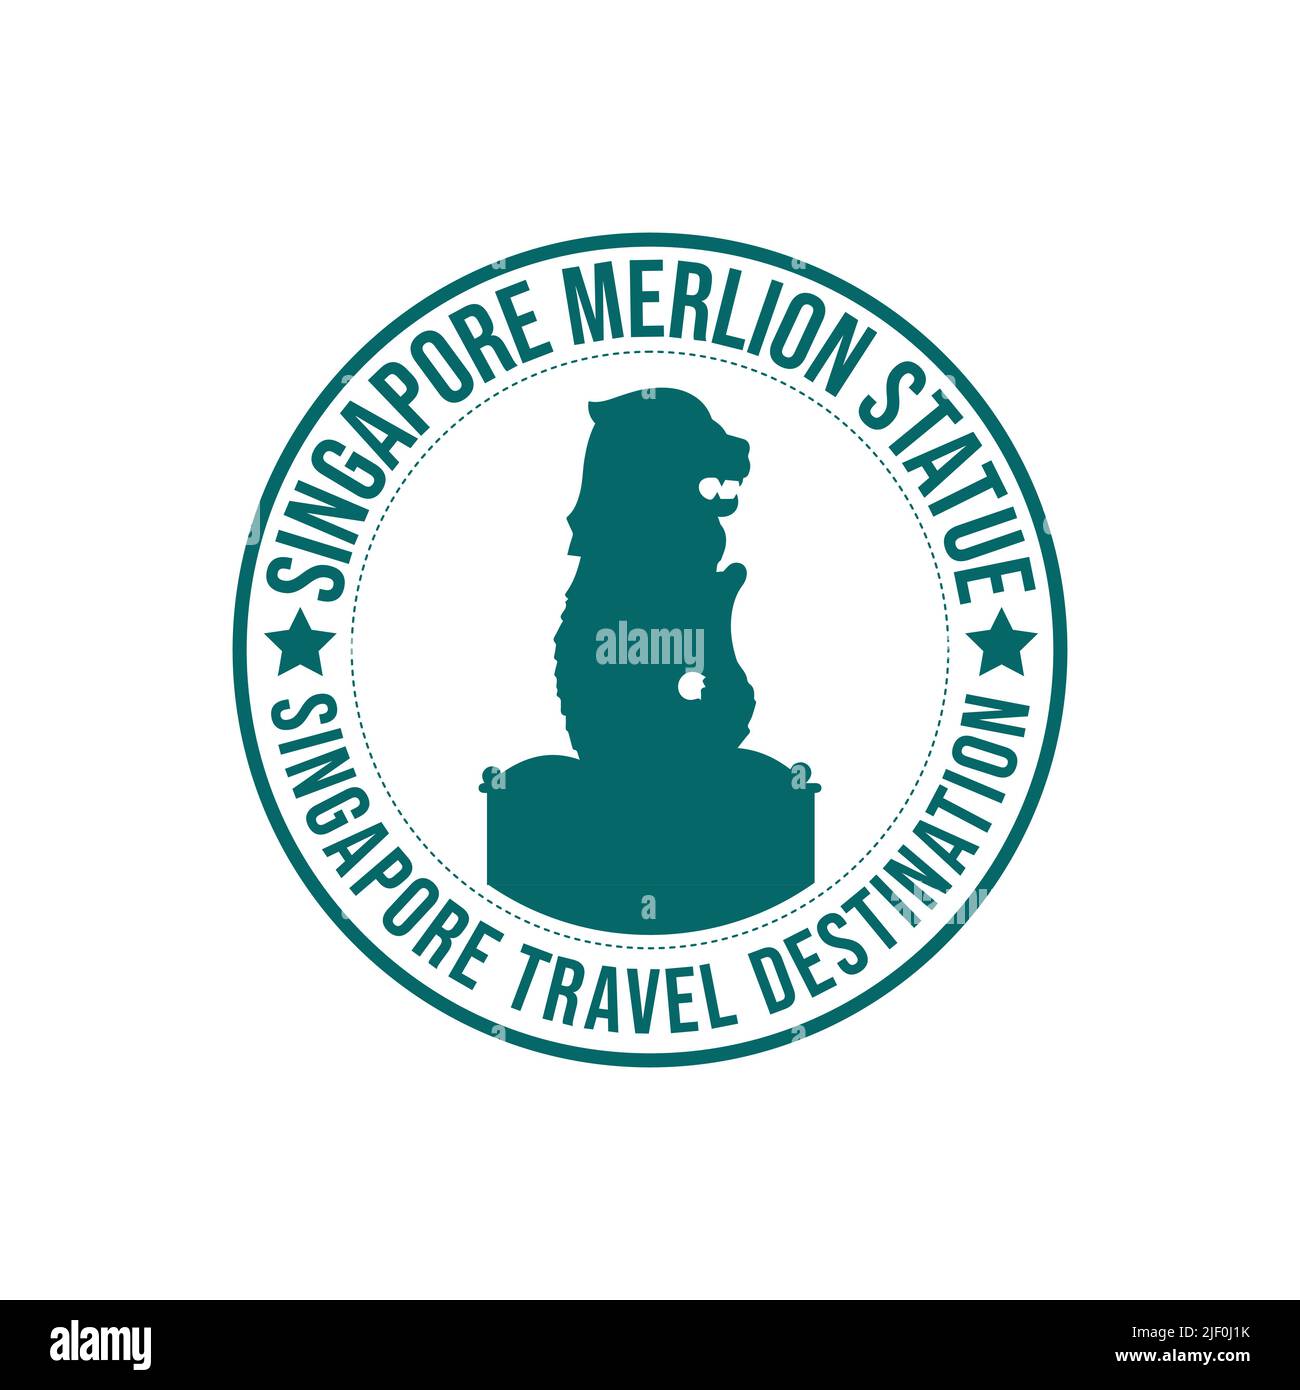 Stempel mit dem Text die Merlion Statue Reisedestination in der Marke geschrieben. Singapur der Merlion historische Statue Architektur Reise Stock Vektor